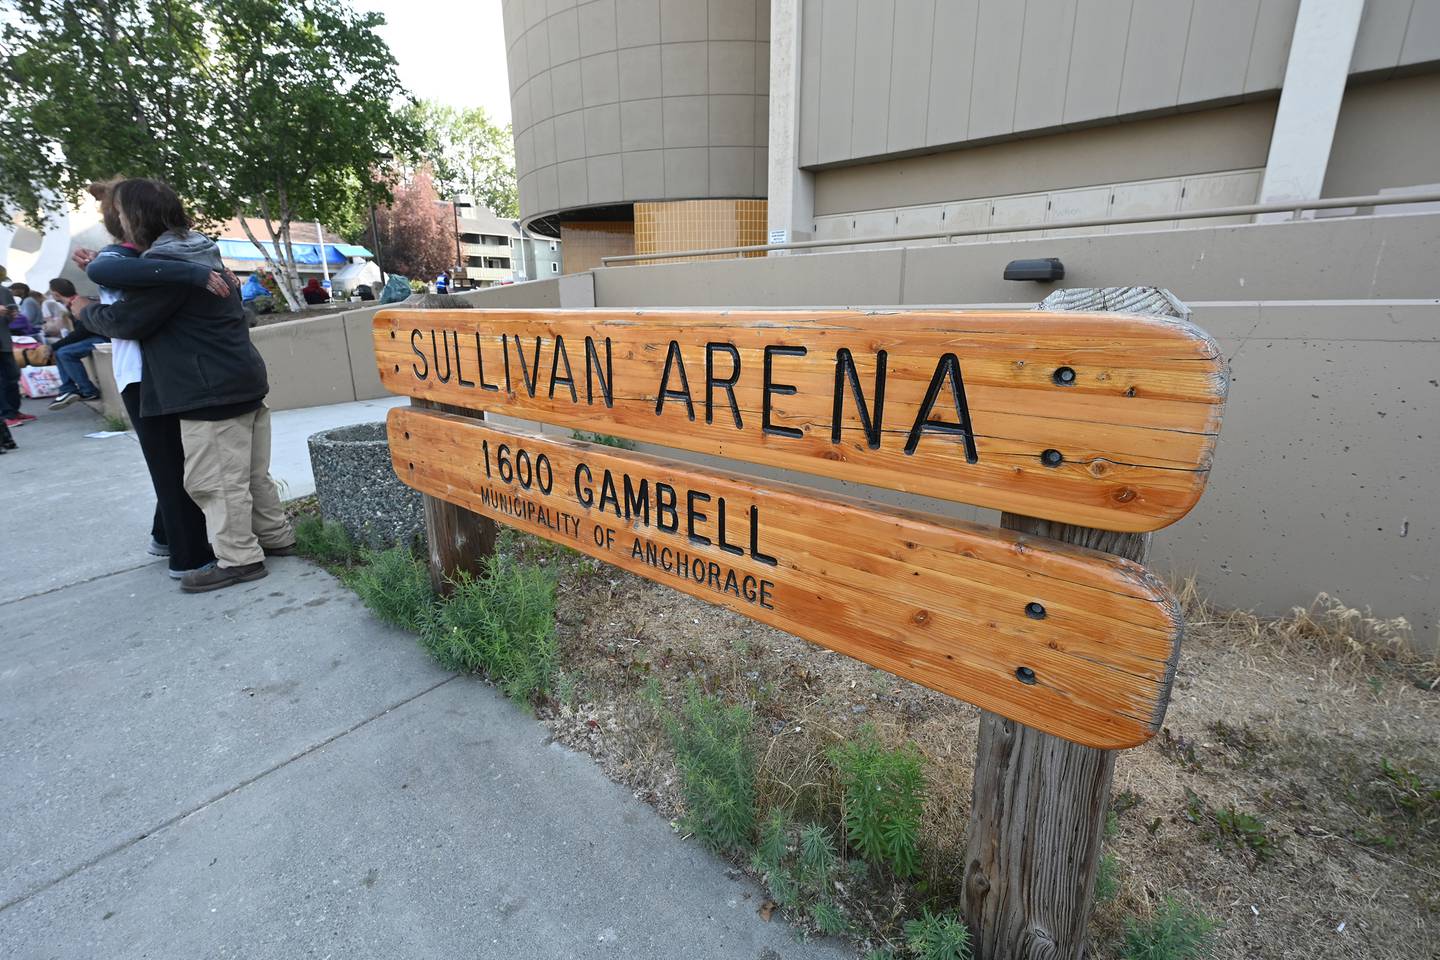 Sullivan Arena homeless shelter last day